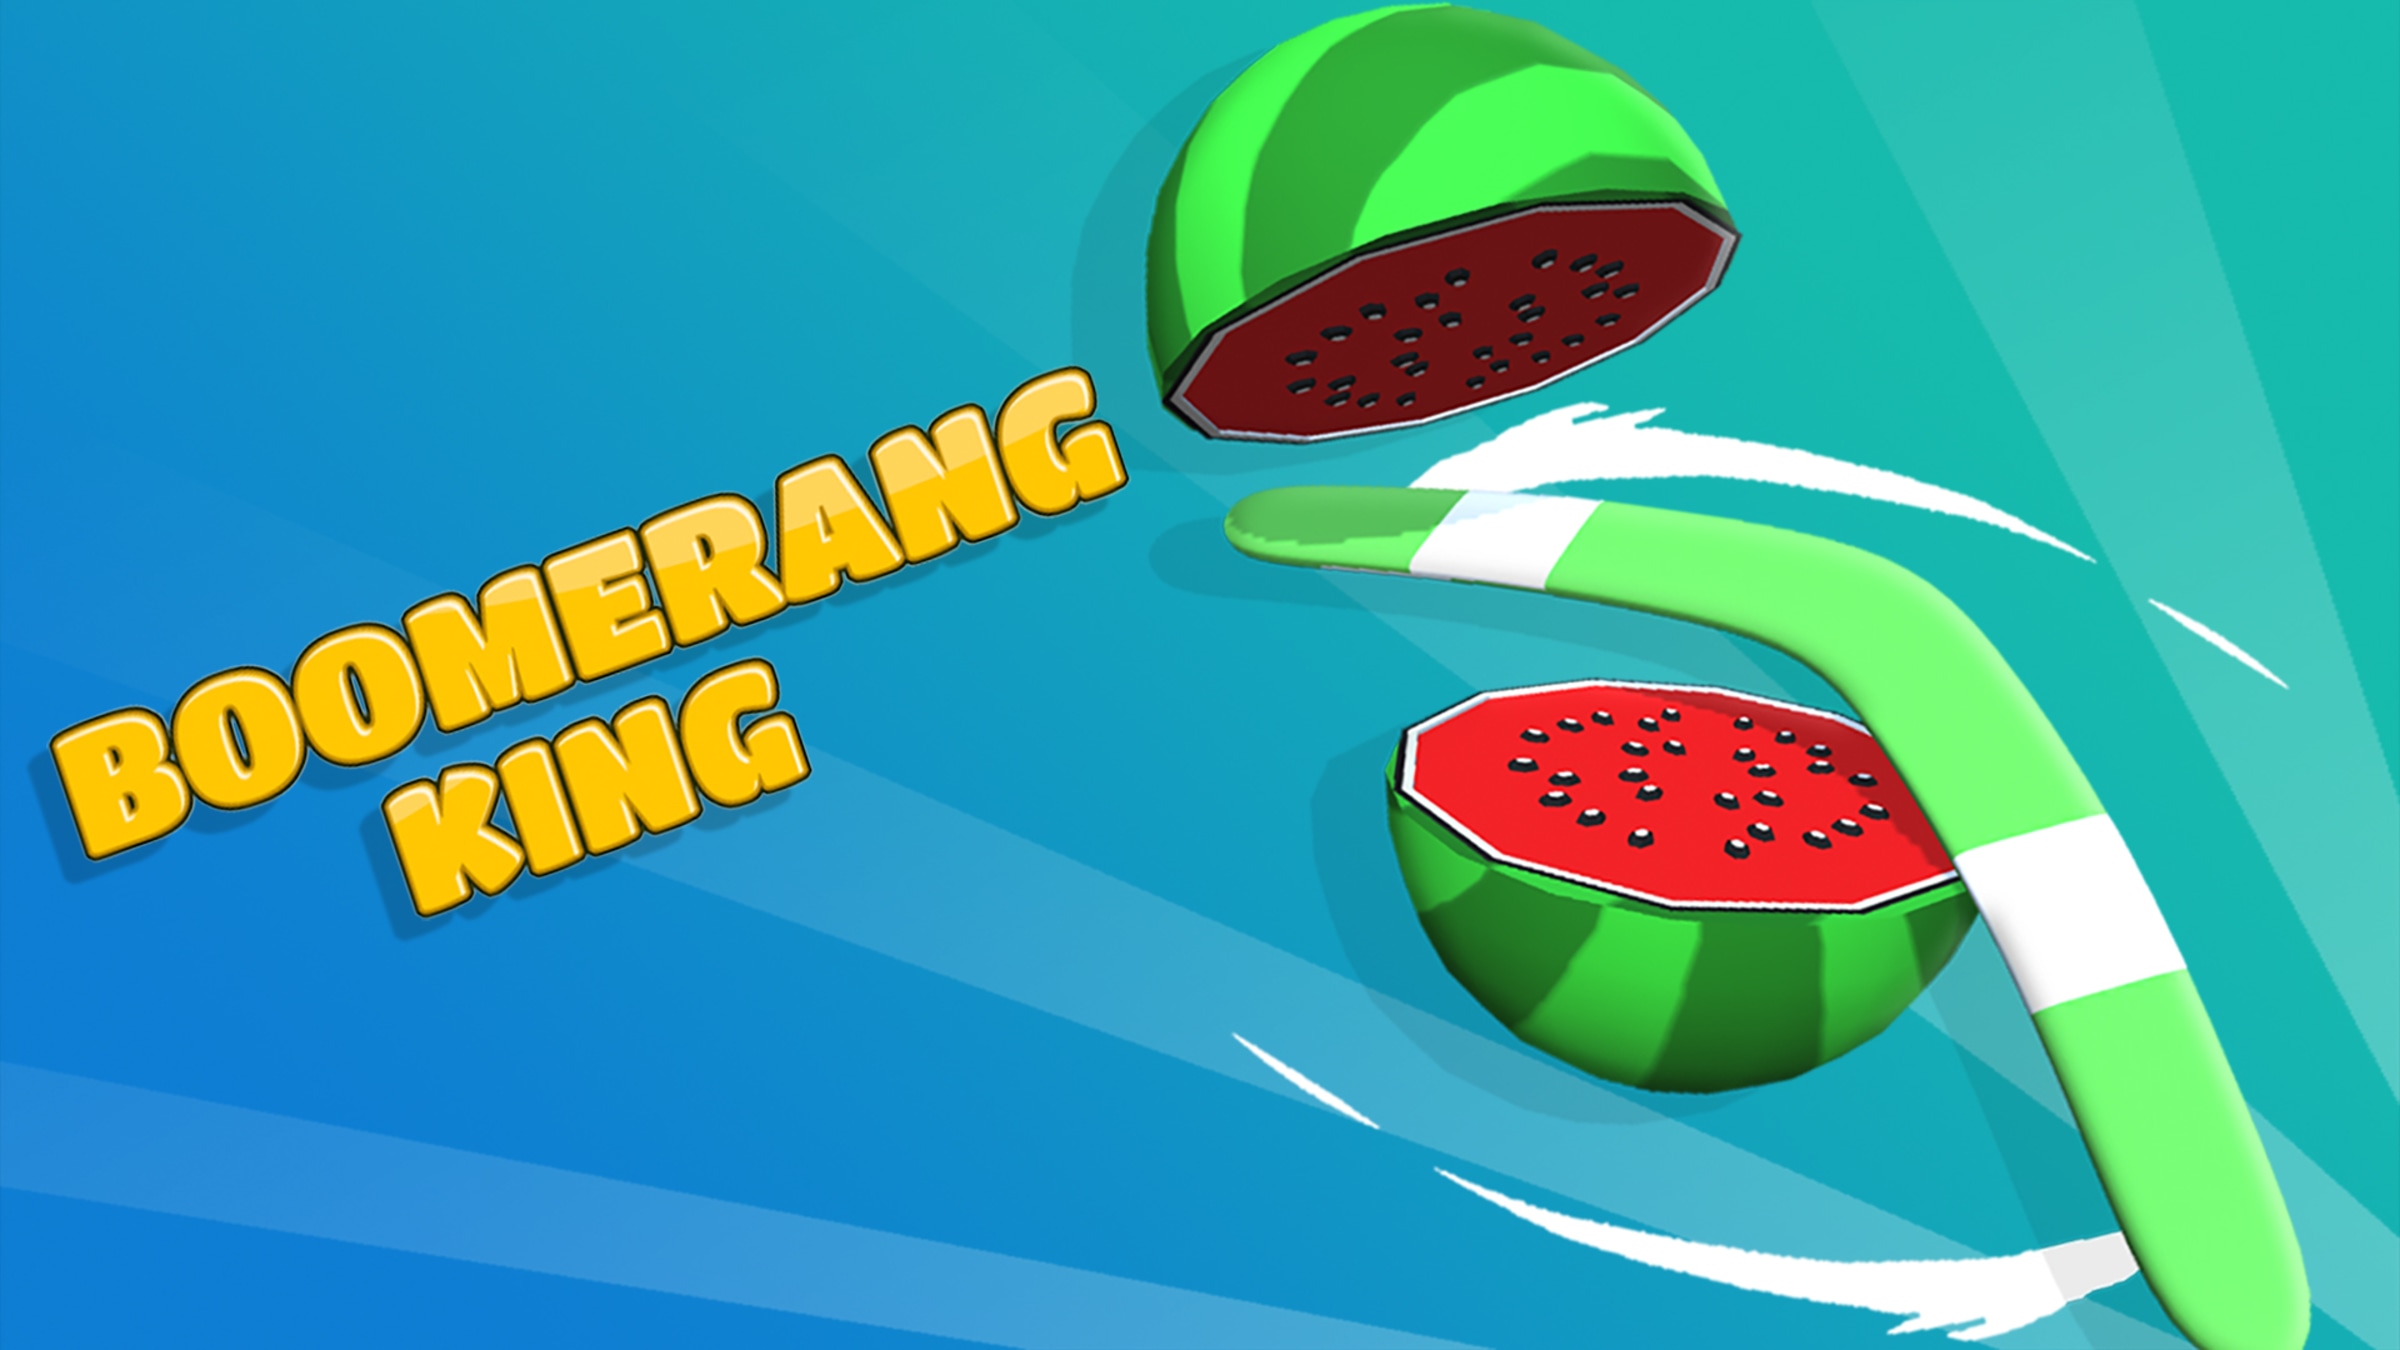 Presa Lógico familia real Boomerang King para Nintendo Switch - Sitio oficial de Nintendo